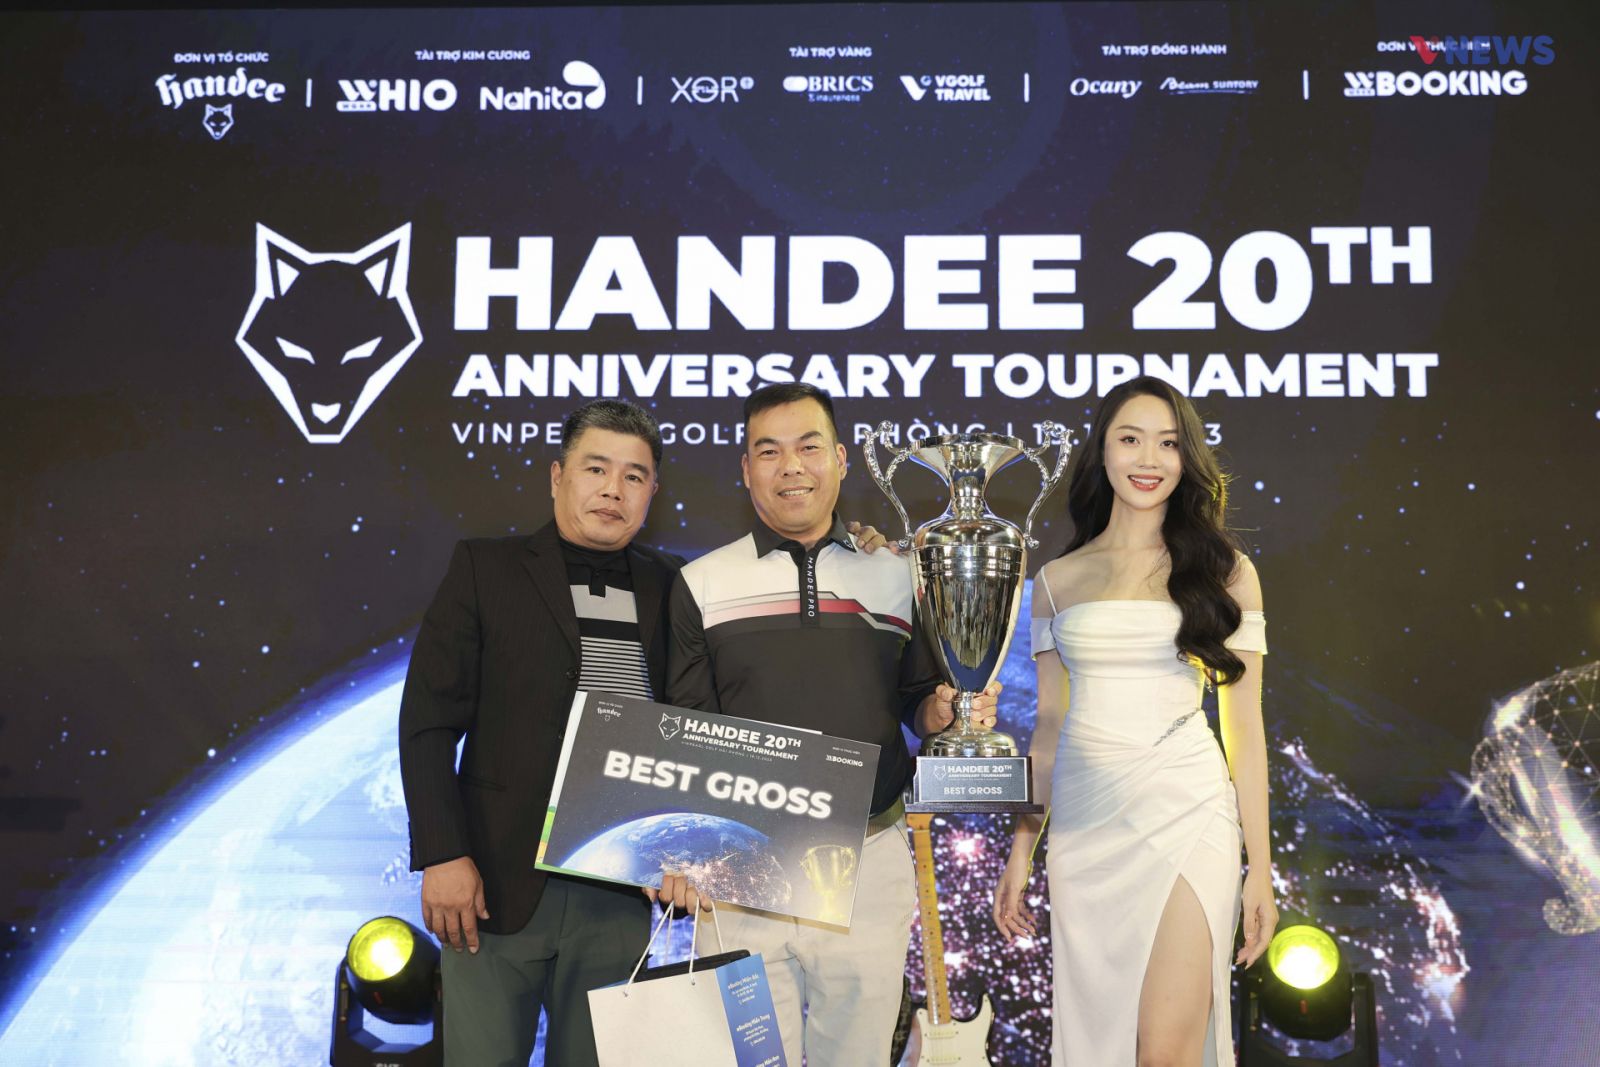 Handee 20th Anniversary Tournament Gọi Tên Golfer Vũ Quang Hoàng